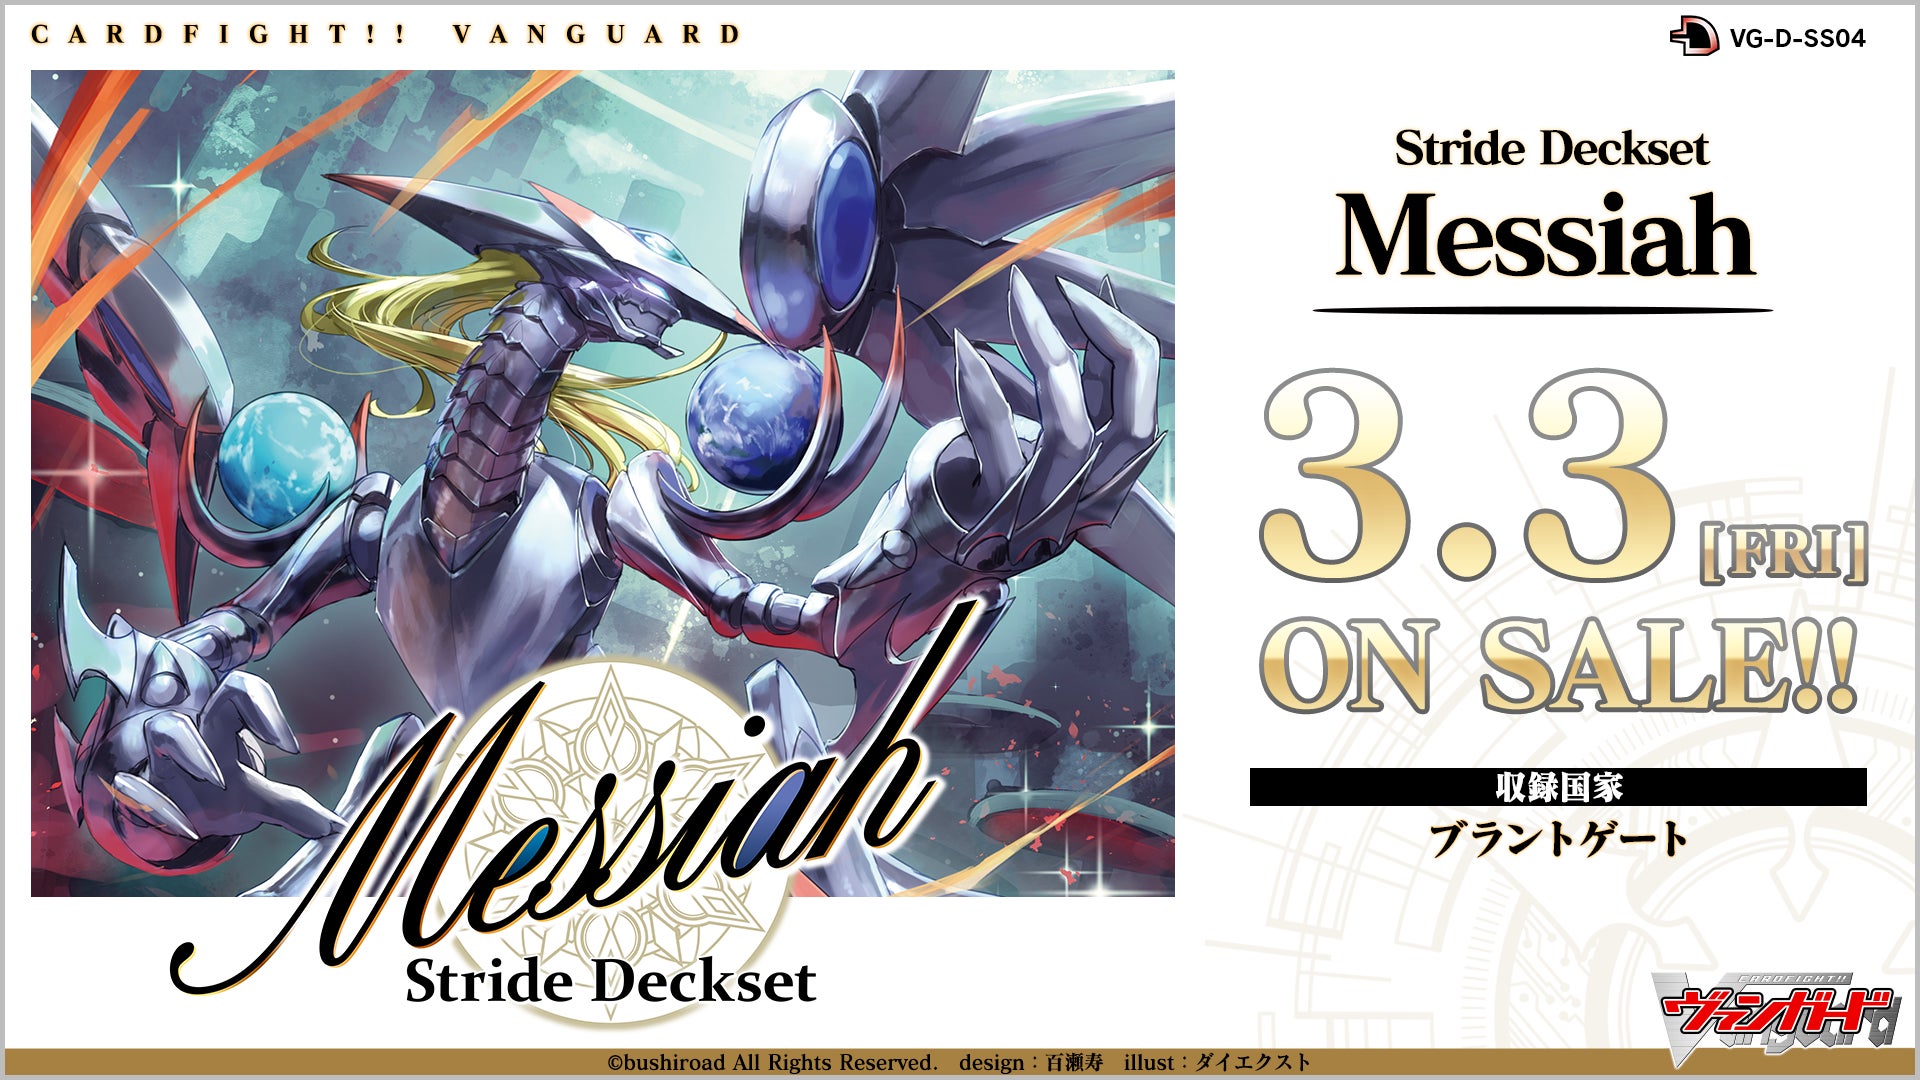 「カードファイト!! ヴァンガード」よりスペシャルシリーズ第4弾「Stride Deckset Messiah」が3月3日(金)に発売！